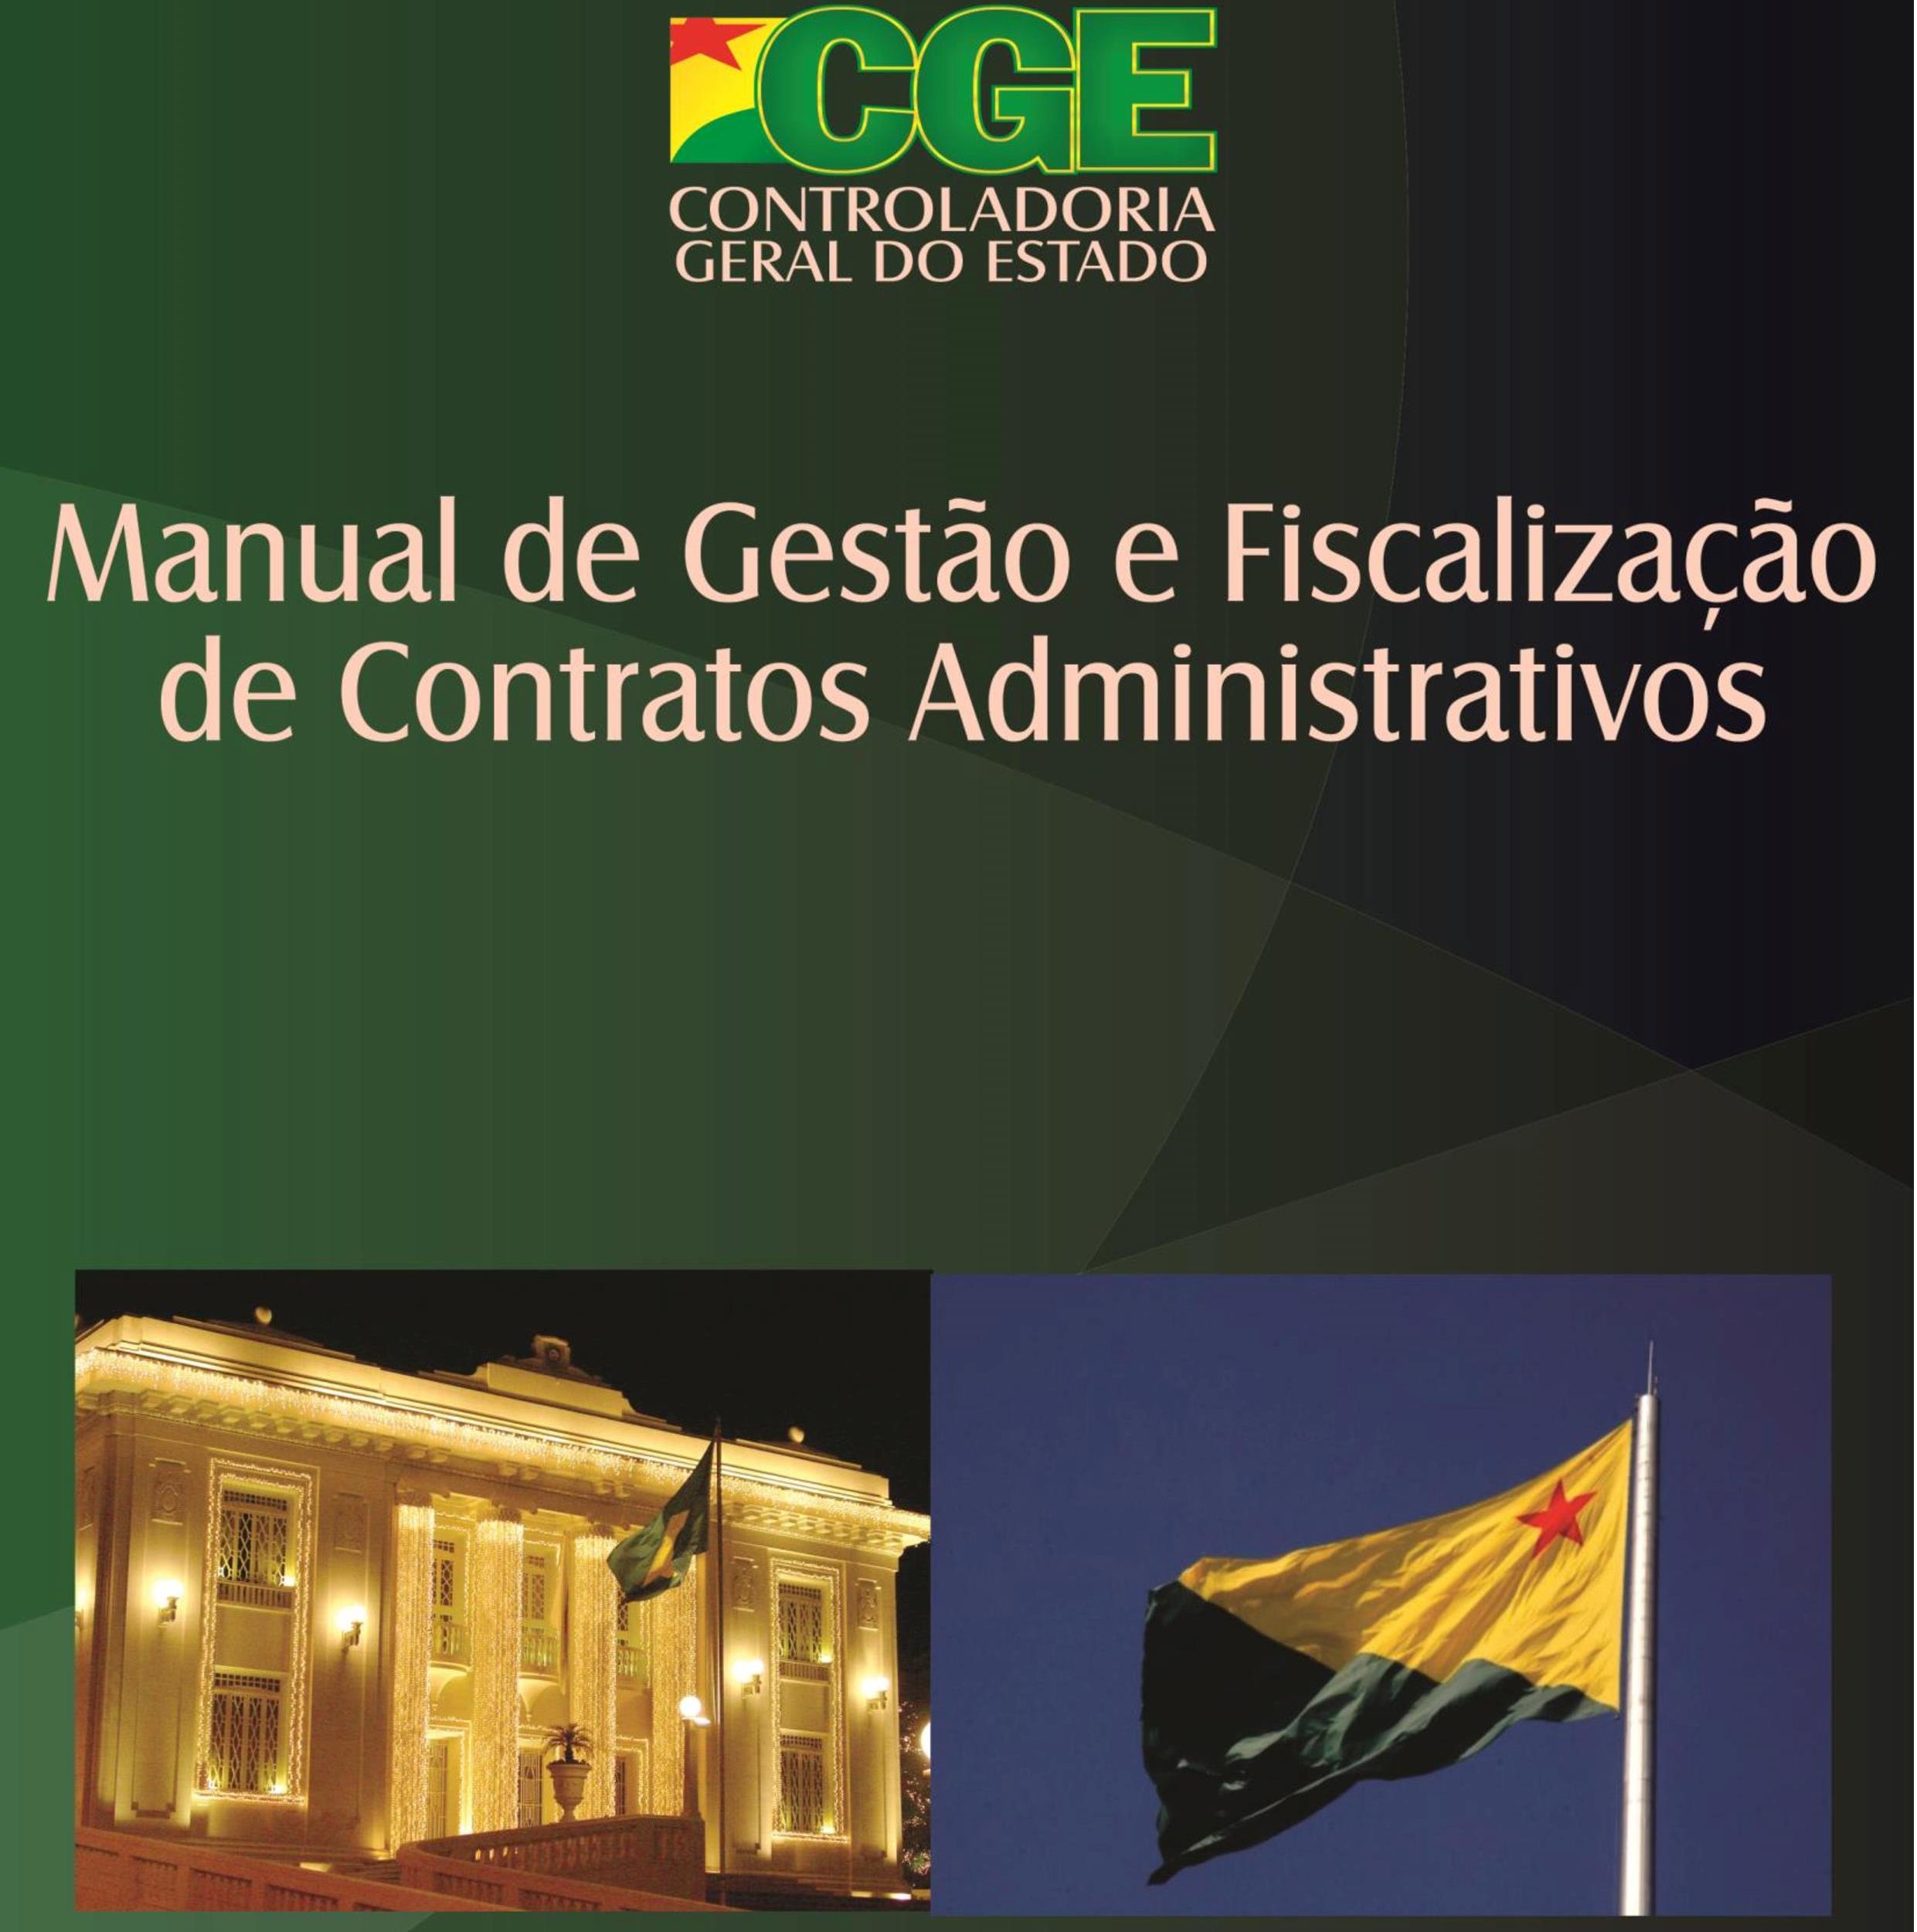 Manual de Gestão e Fiscalização de Contratos Administrativos